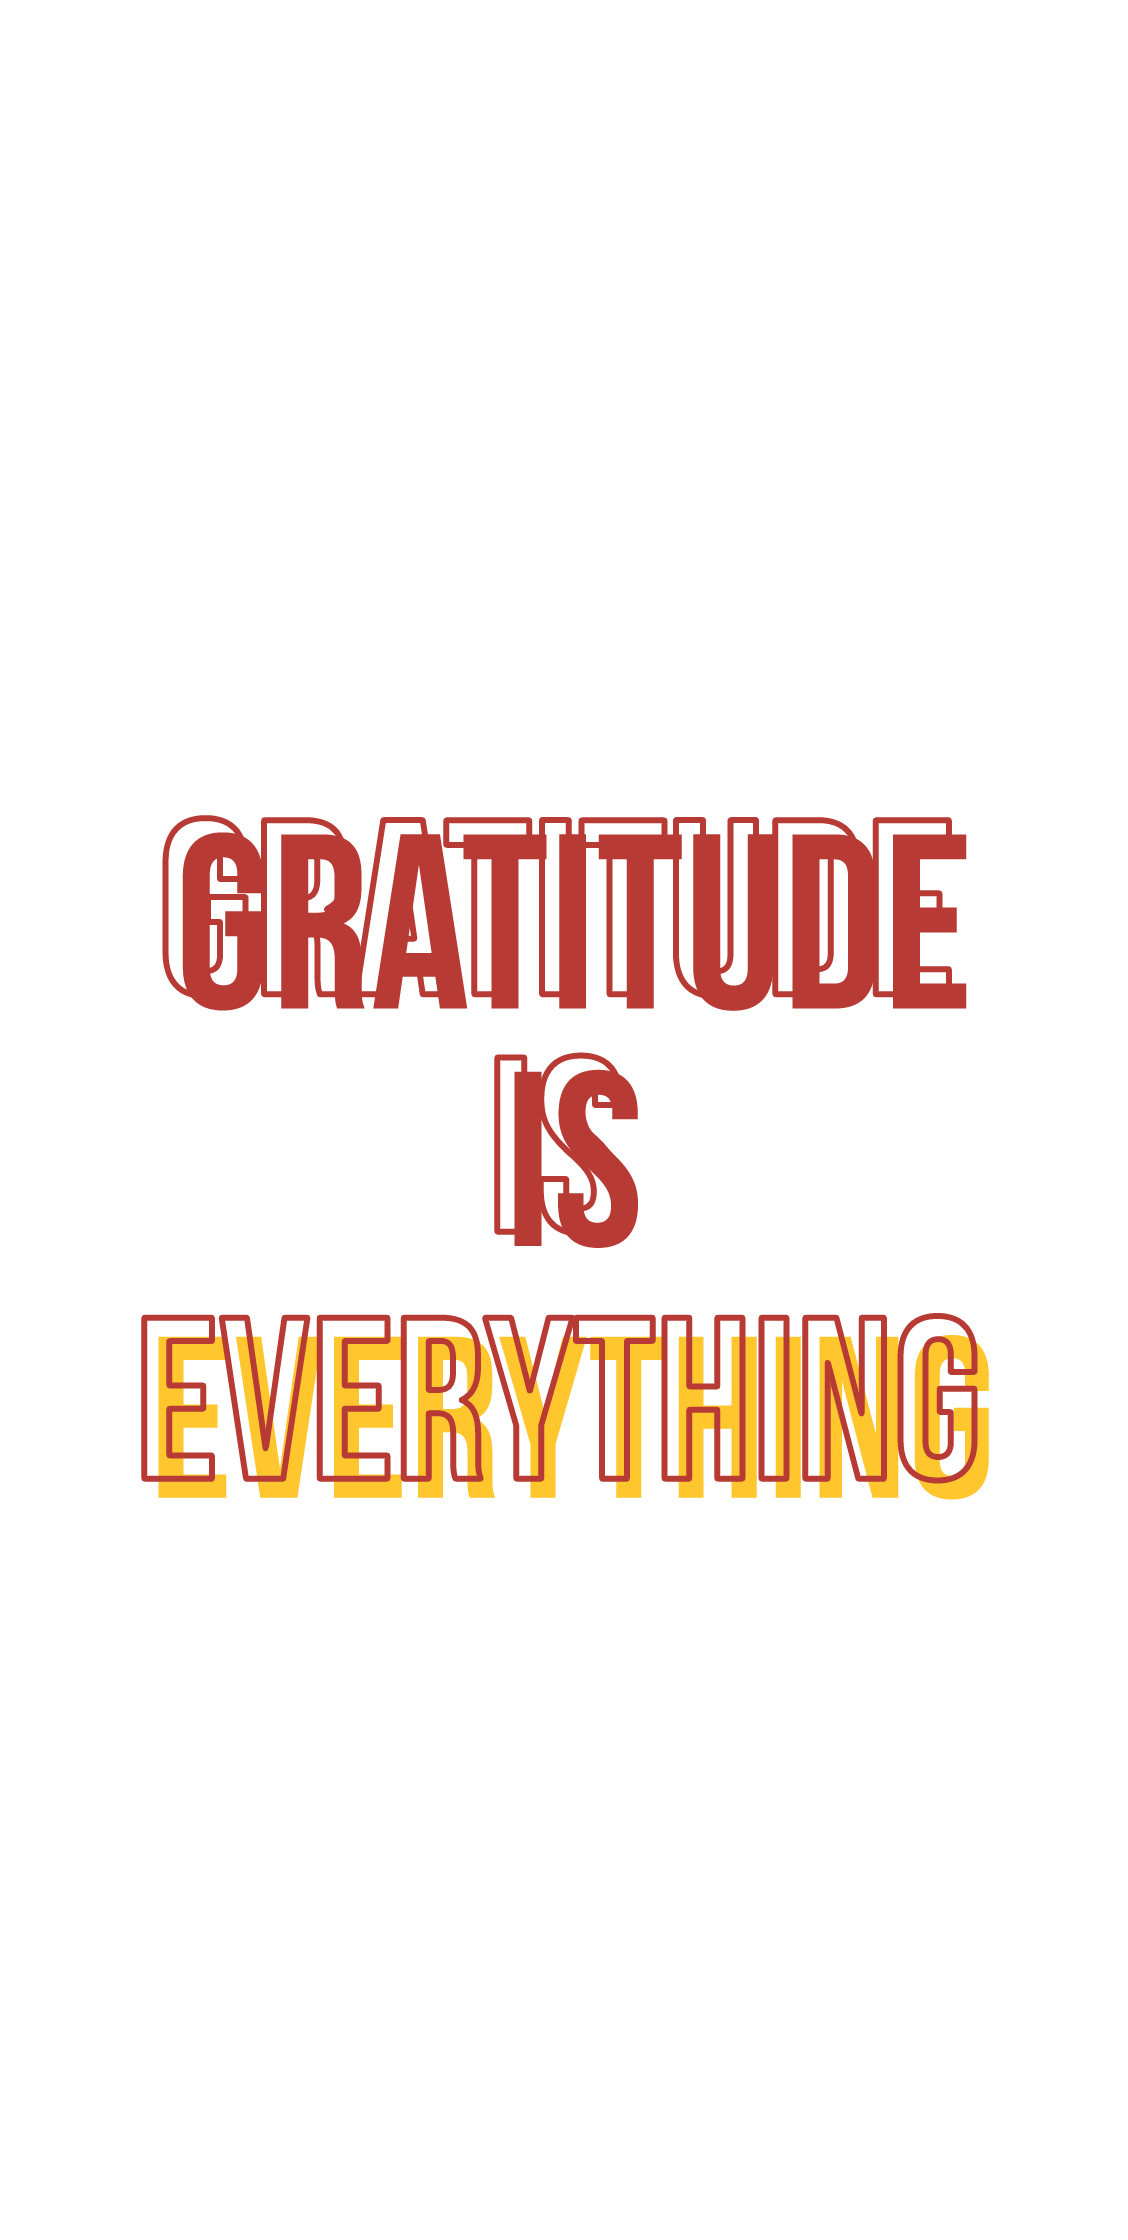 Gratitude: Minimalistic design, Slogan, The right attitude. 1130x2240 HD Wallpaper.